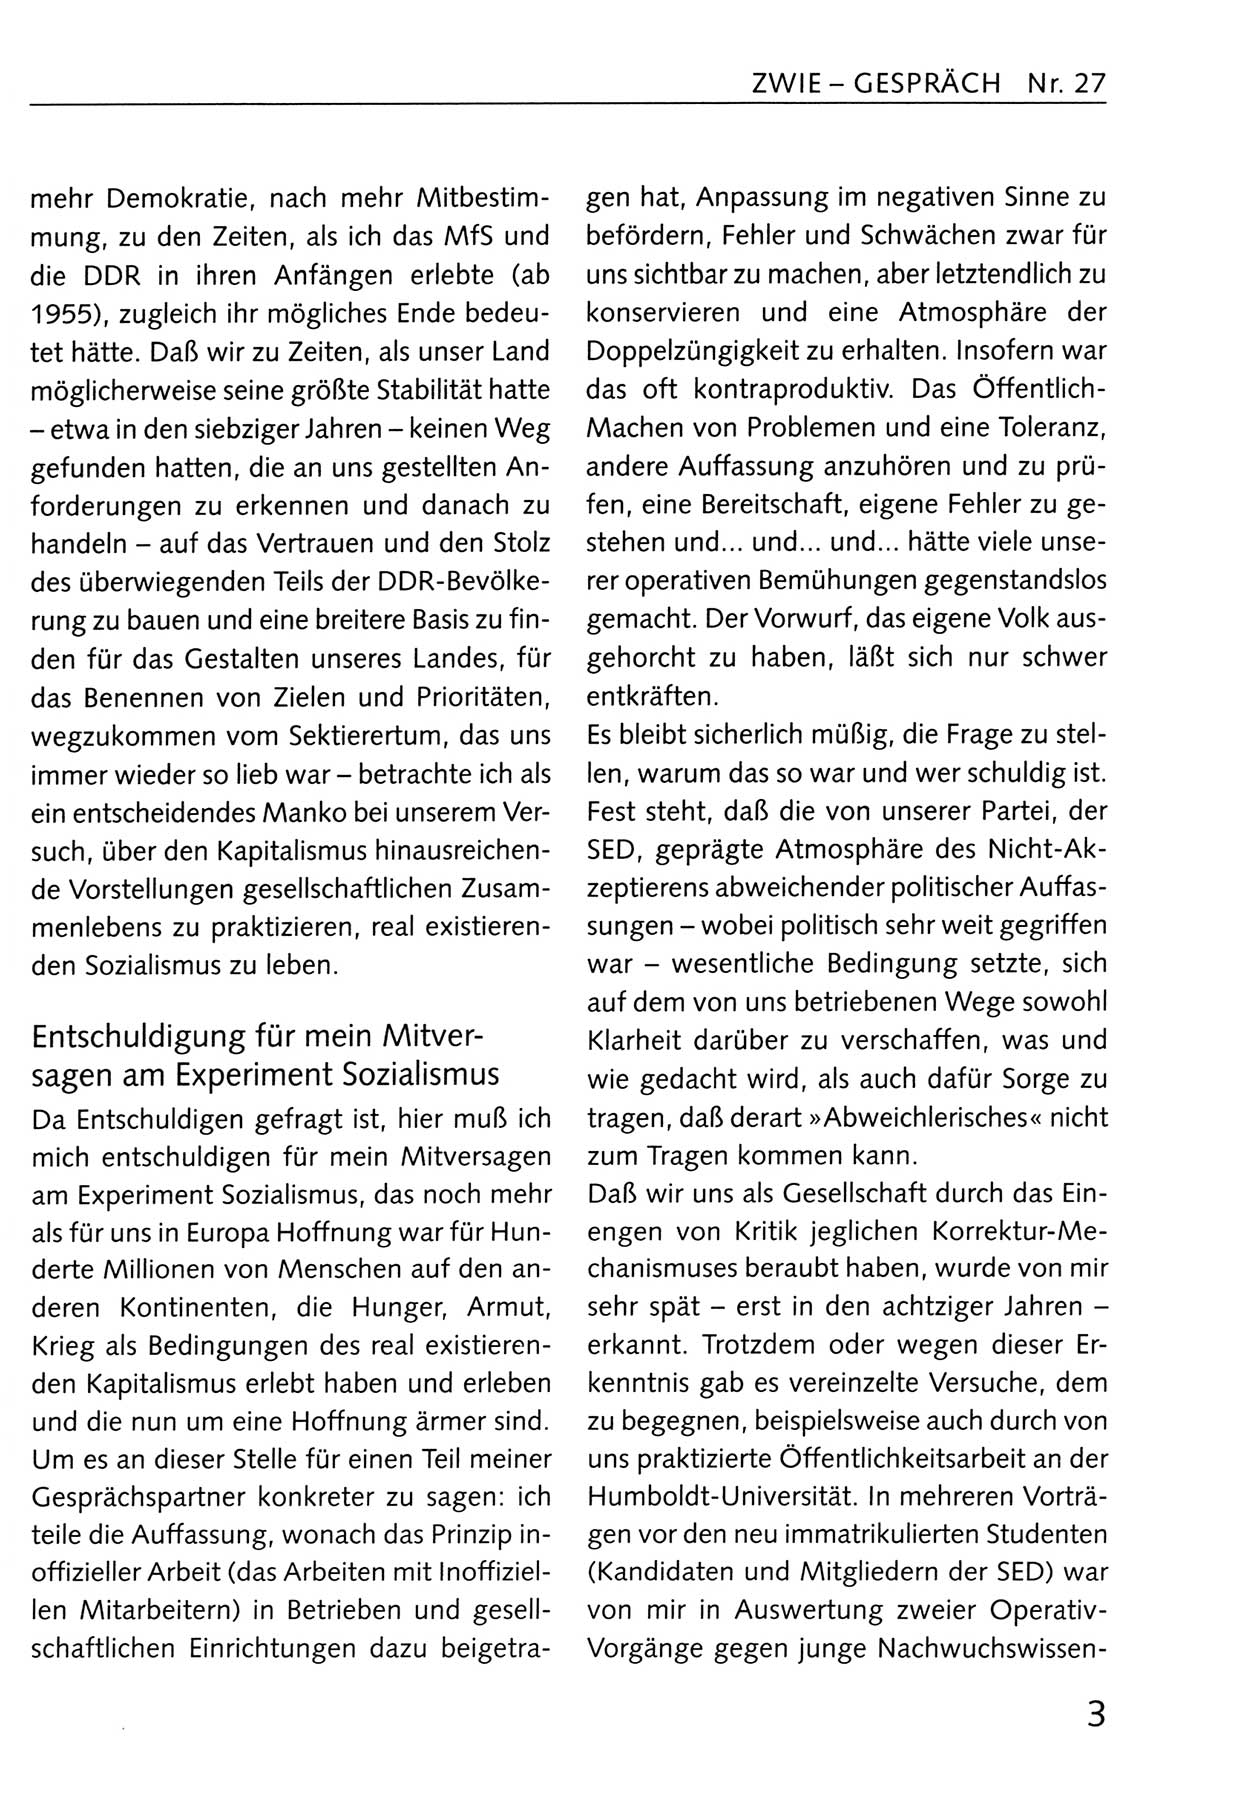 Zwie-Gespräch, Beiträge zum Umgang mit der Staatssicherheits-Vergangenheit [Deutsche Demokratische Republik (DDR)], Ausgabe Nr. 27, Berlin 1995, Seite 3 (Zwie-Gespr. Ausg. 27 1995, S. 3)